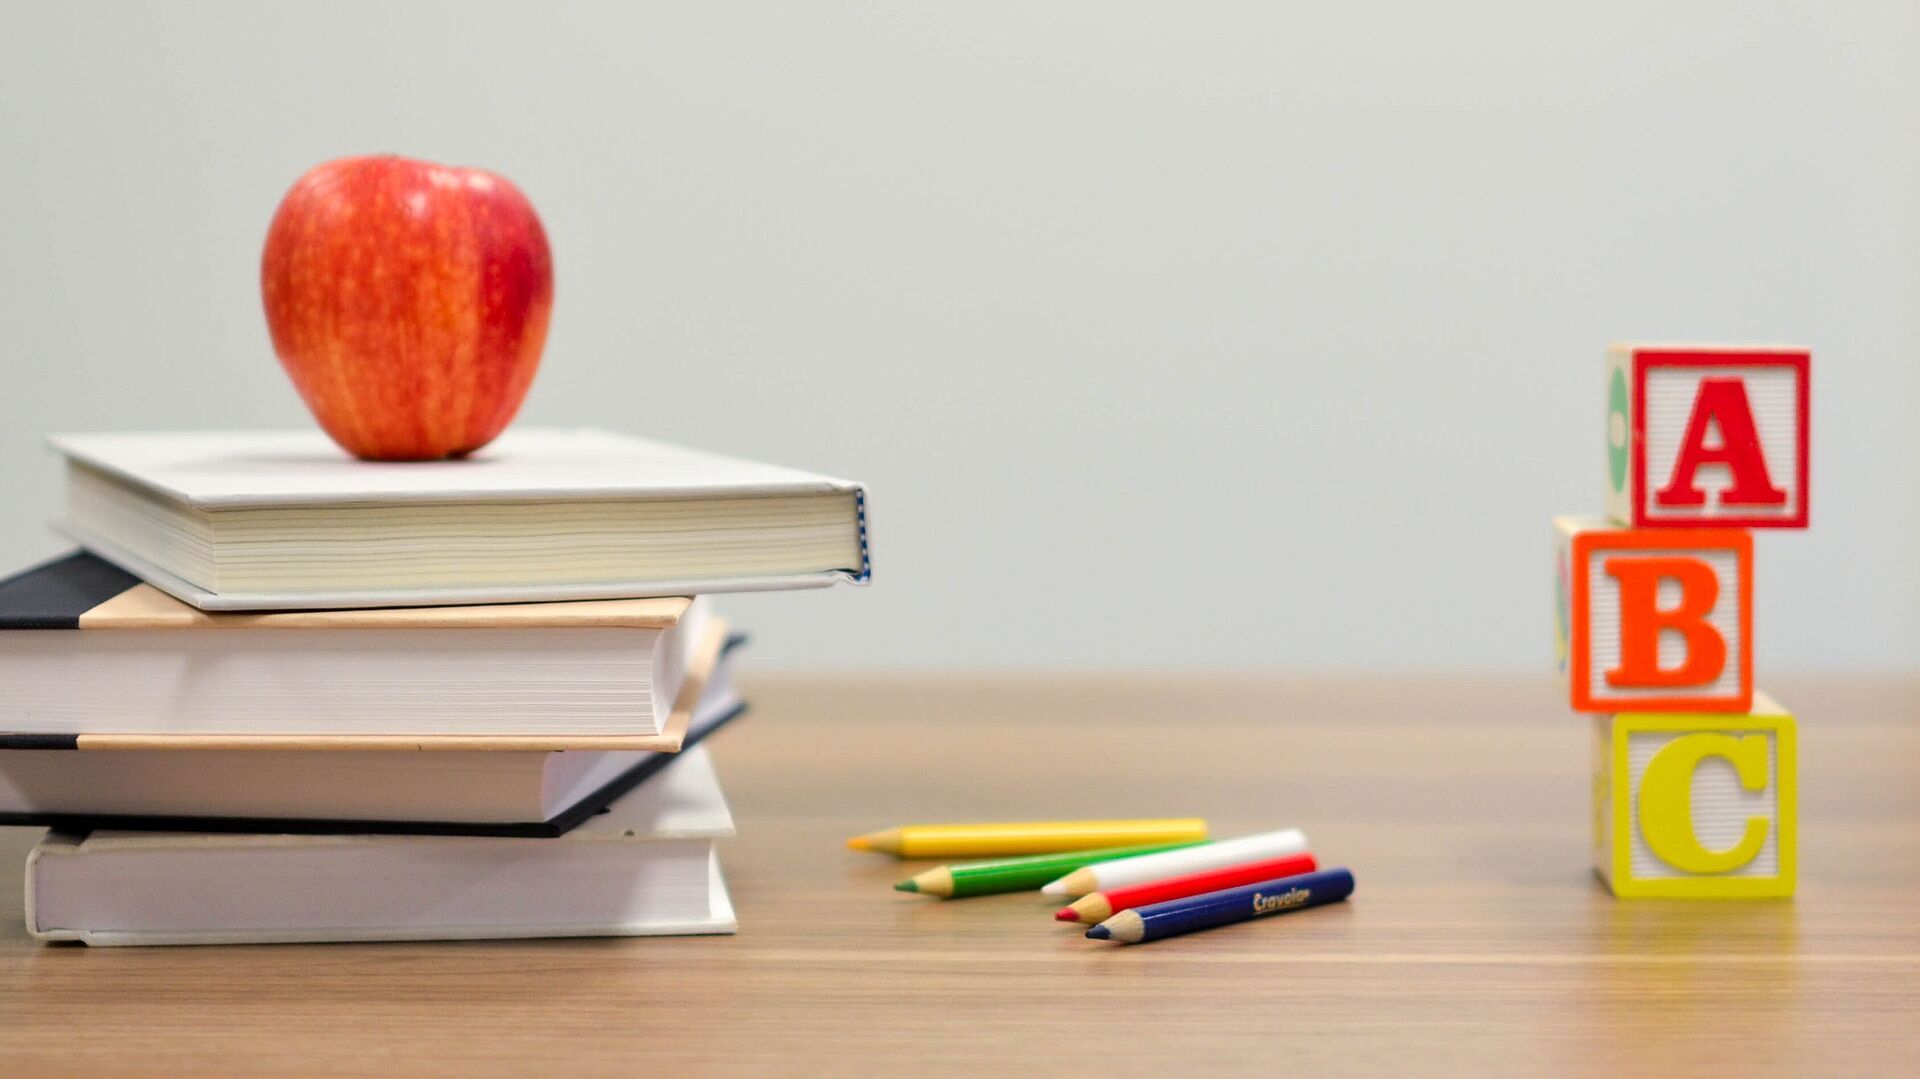 Pult in einem Klassenzimmer auf welchem Bücher, ein Apfel und Buchstabenbausteine liegen